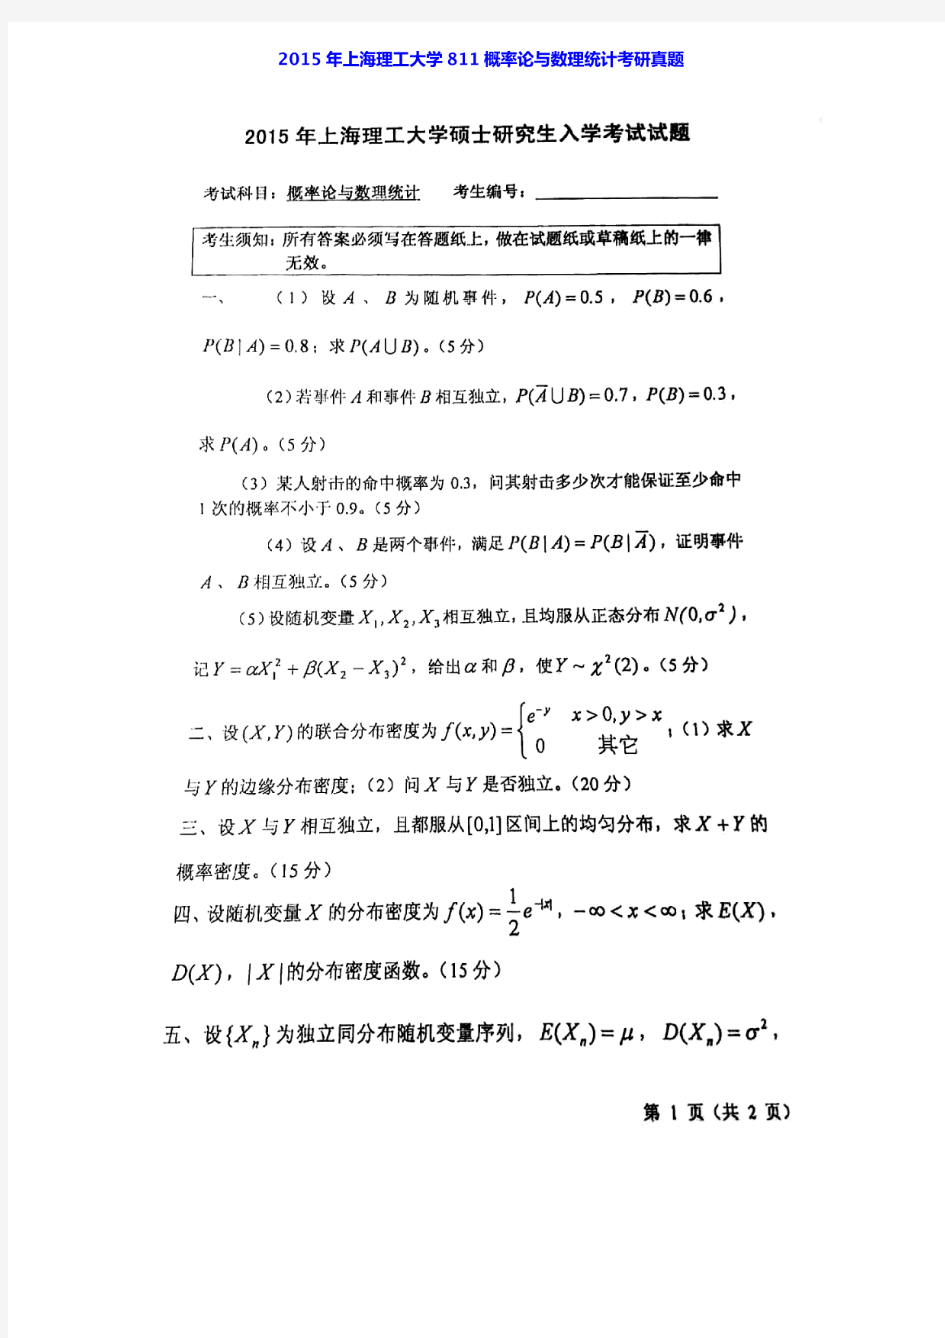 上海理工大学811概率论与数理统计03-07.09-10.13-15年真题(05年含部分答案)